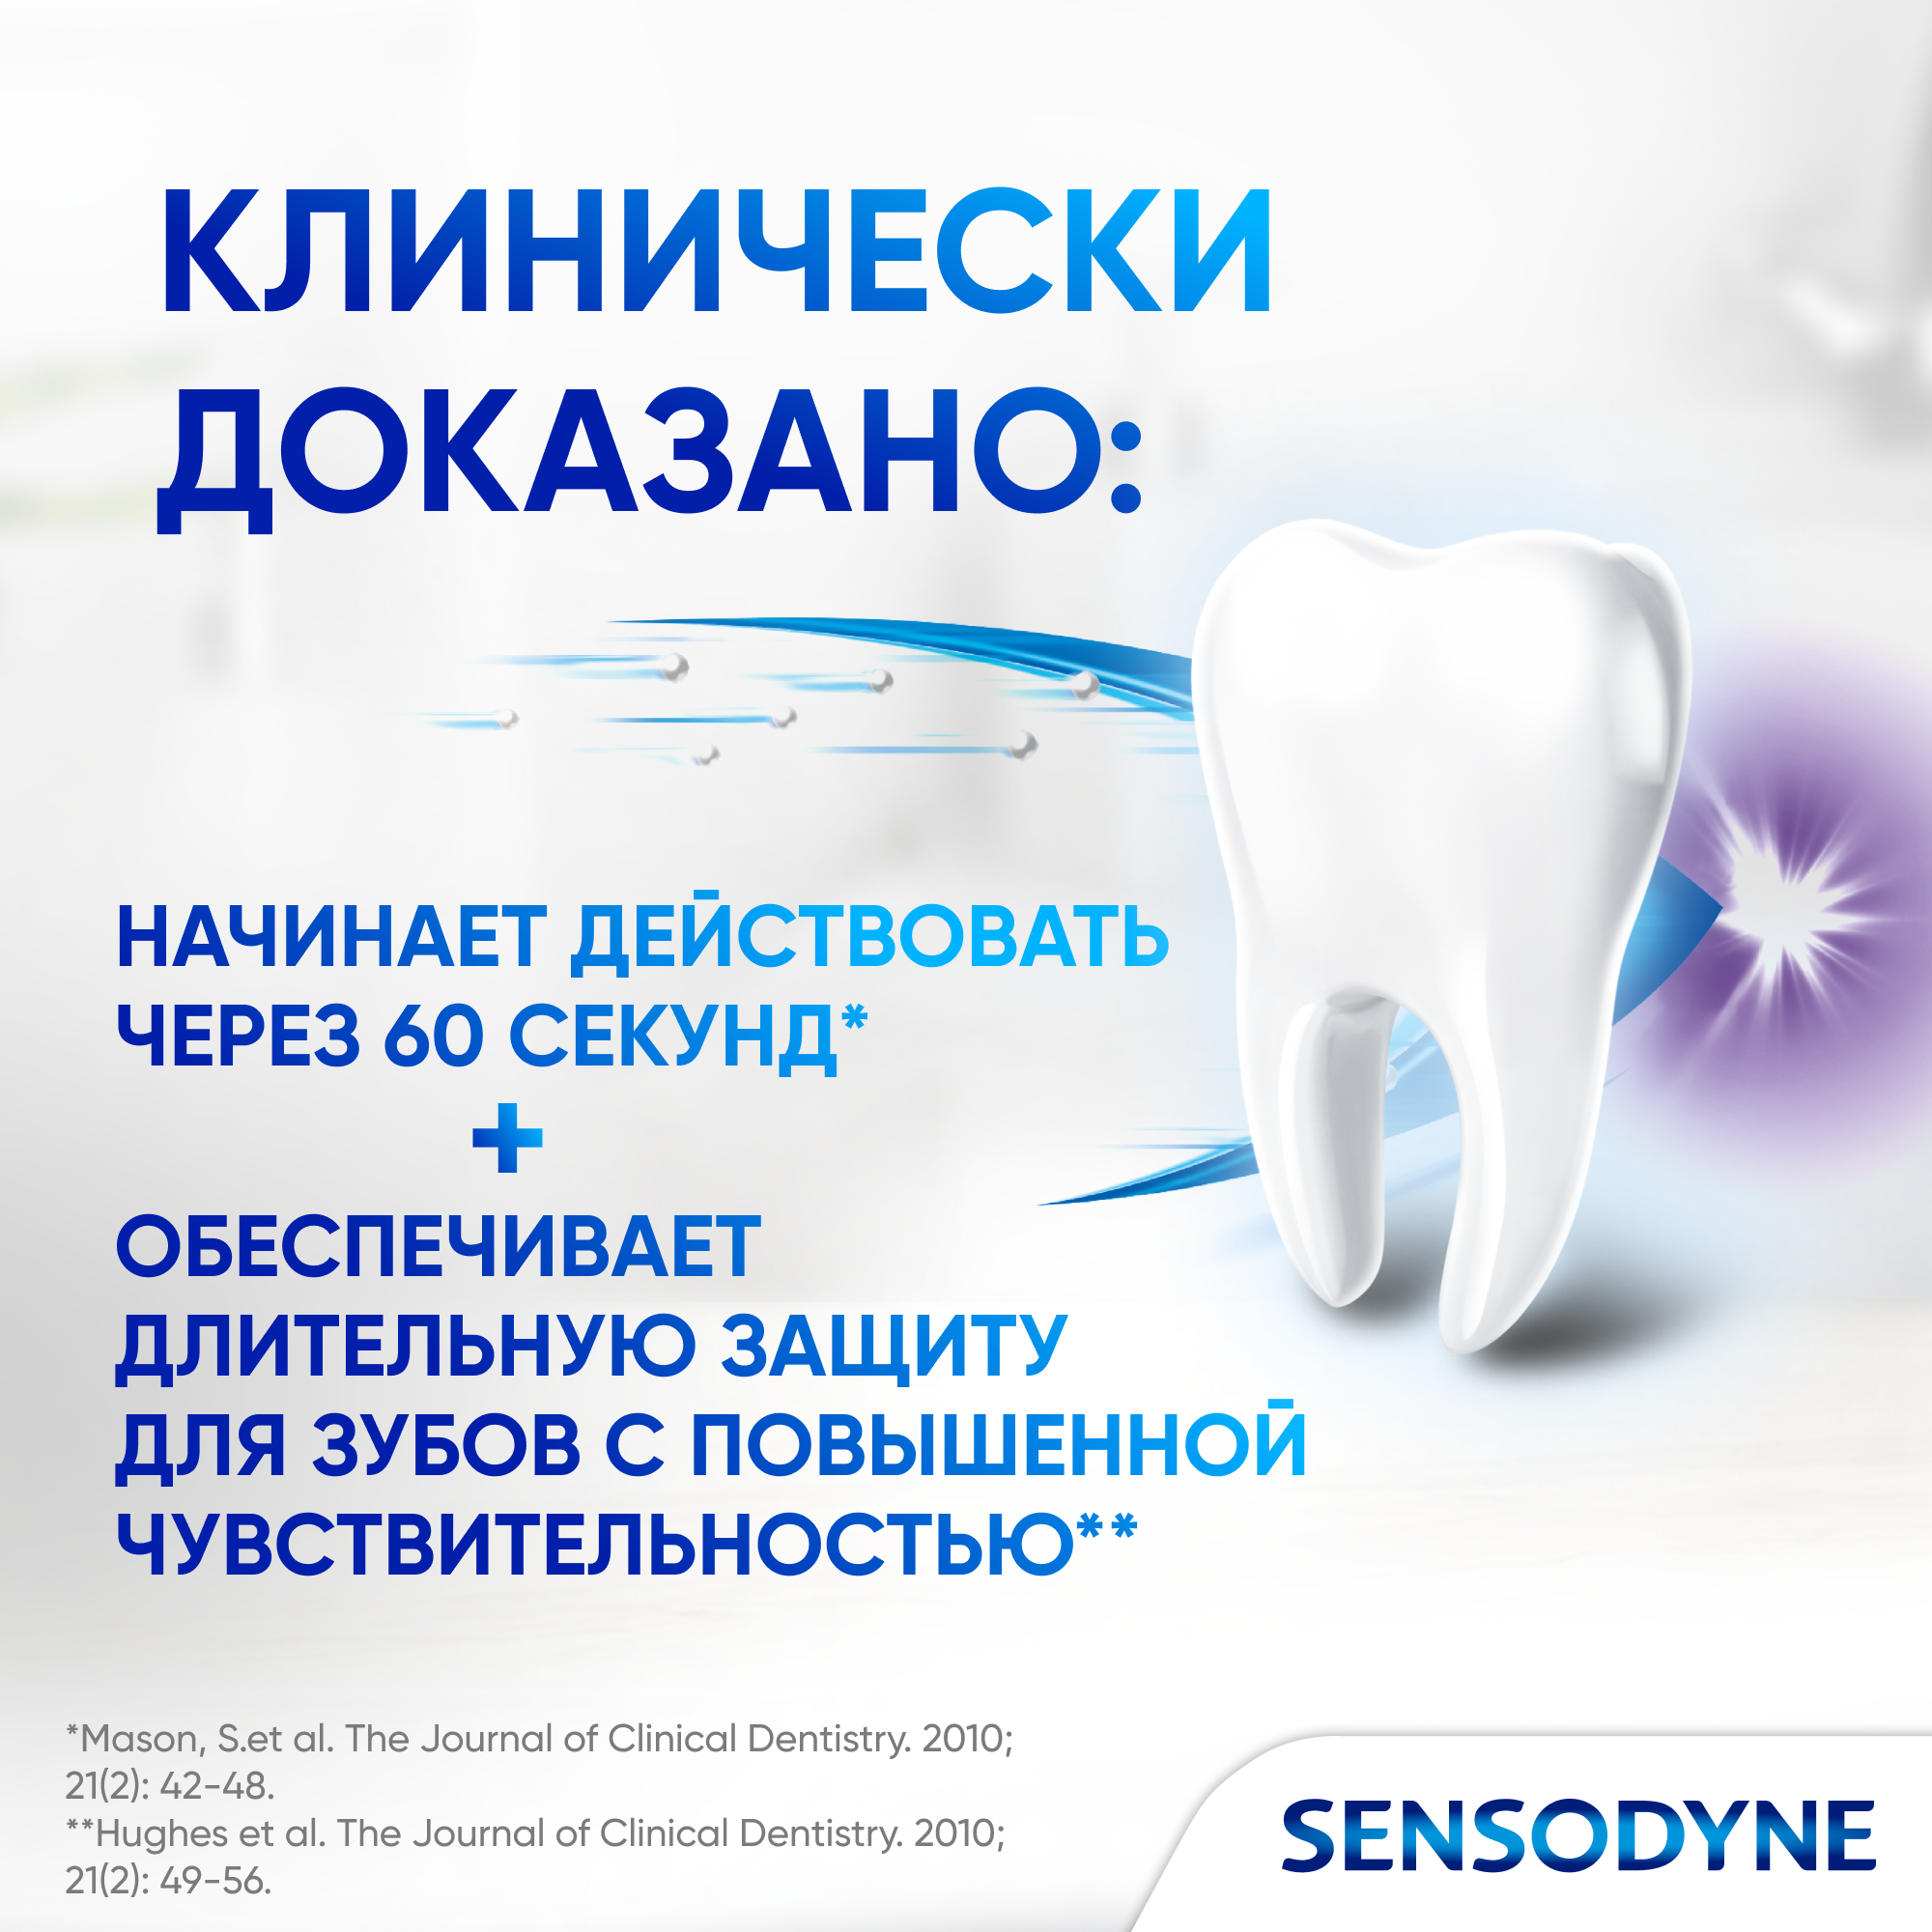 Зубная паста Sensodyne Мгновенный Эффект для чувствительных зубов с фтором для защиты от кариеса, быстрого снижения и длительной защиты от боли, вызванной повышенной чувствительностью зубов, 75 мл*2 шт